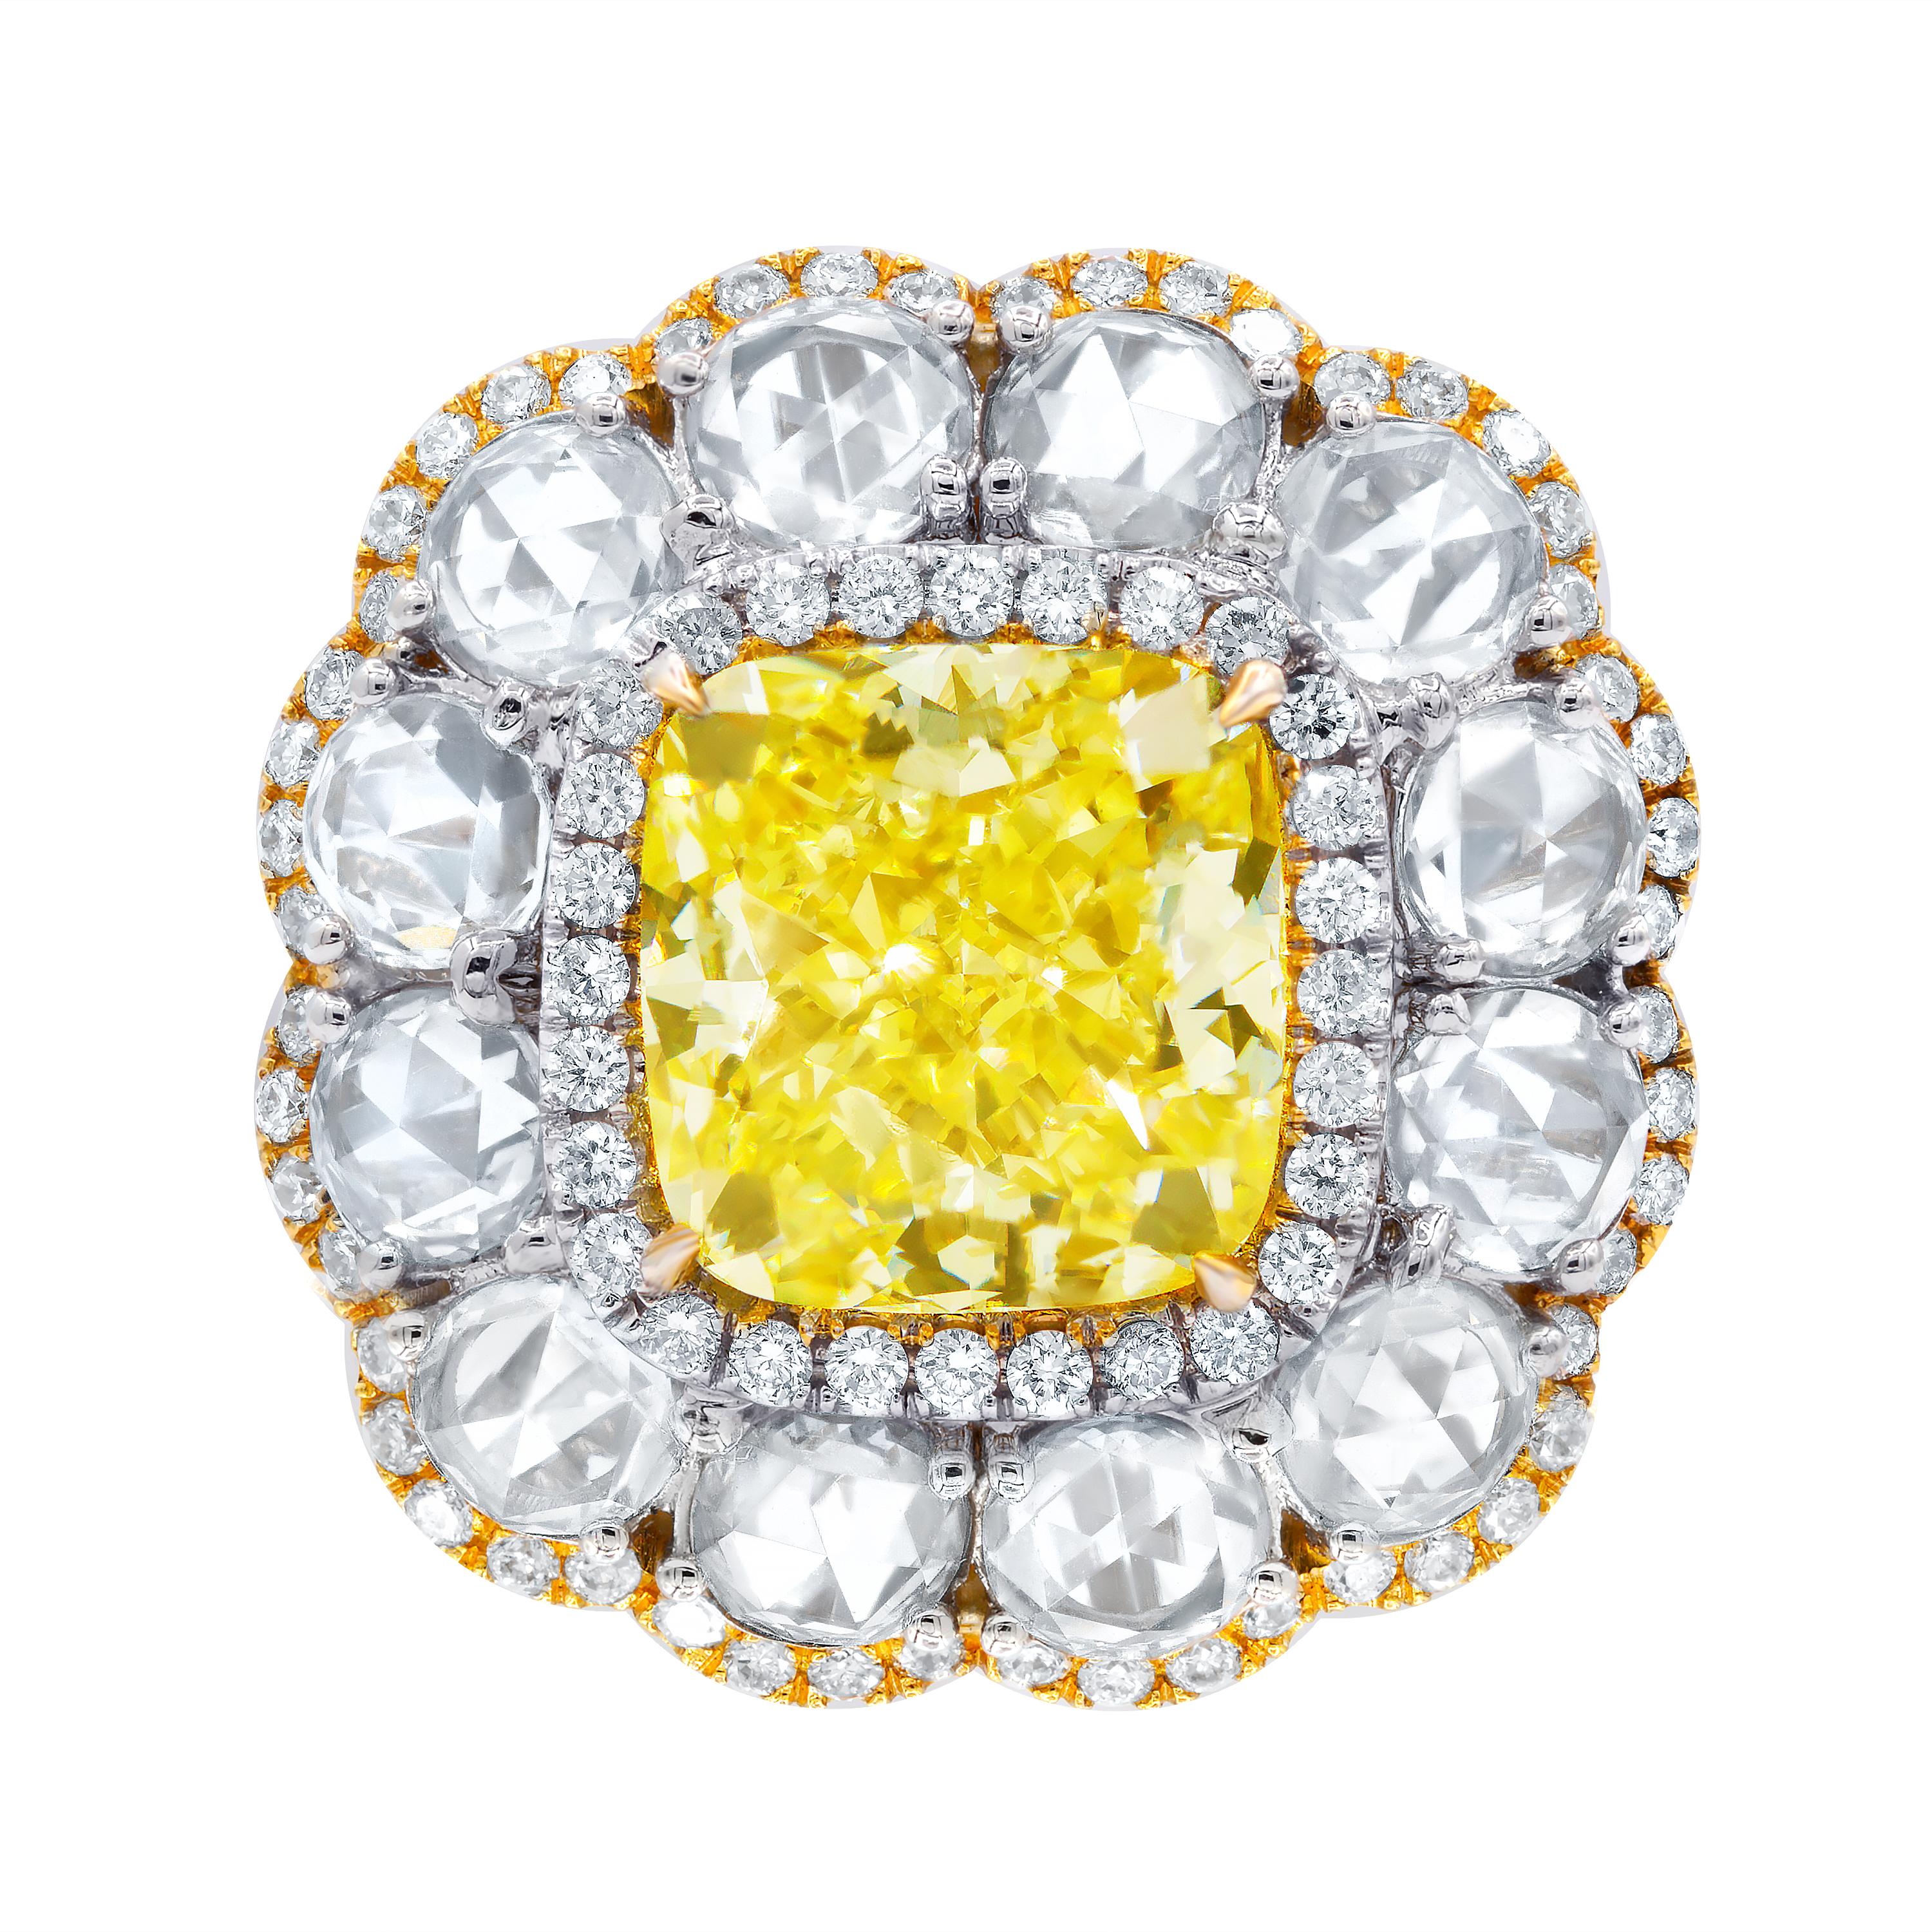 bague en or jaune et blanc 18 carats, avec un diamant coussin certifié GIA de 6,16 ct de couleur jaune fantaisie et de pureté vs2  (radc890) serti de 2,88 carats de diamants taille rose.
